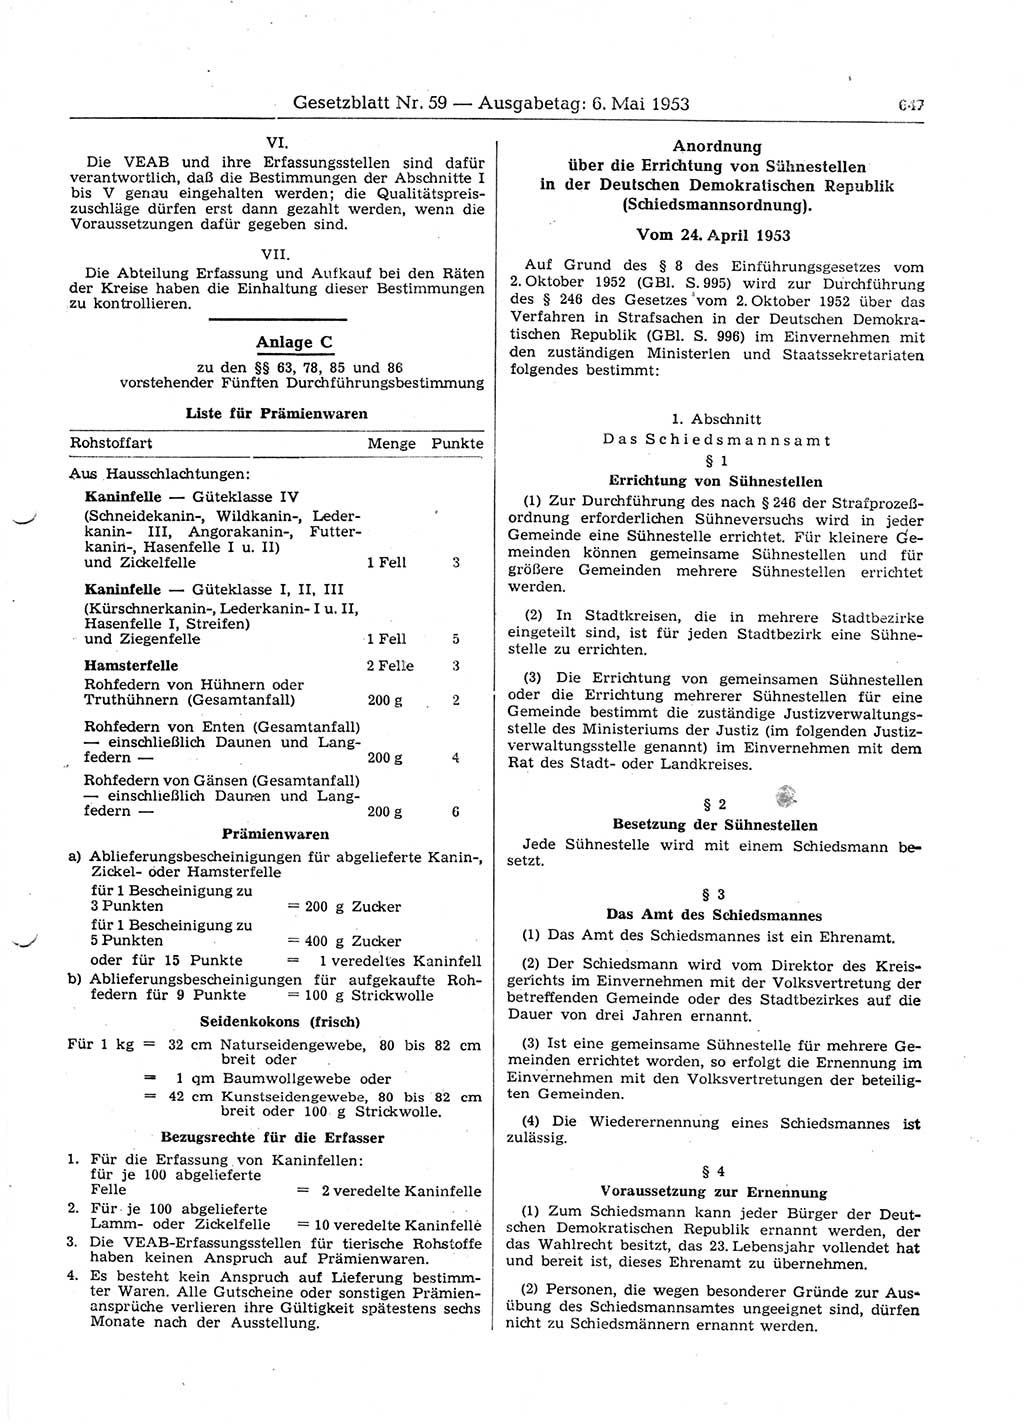 Gesetzblatt (GBl.) der Deutschen Demokratischen Republik (DDR) 1953, Seite 647 (GBl. DDR 1953, S. 647)